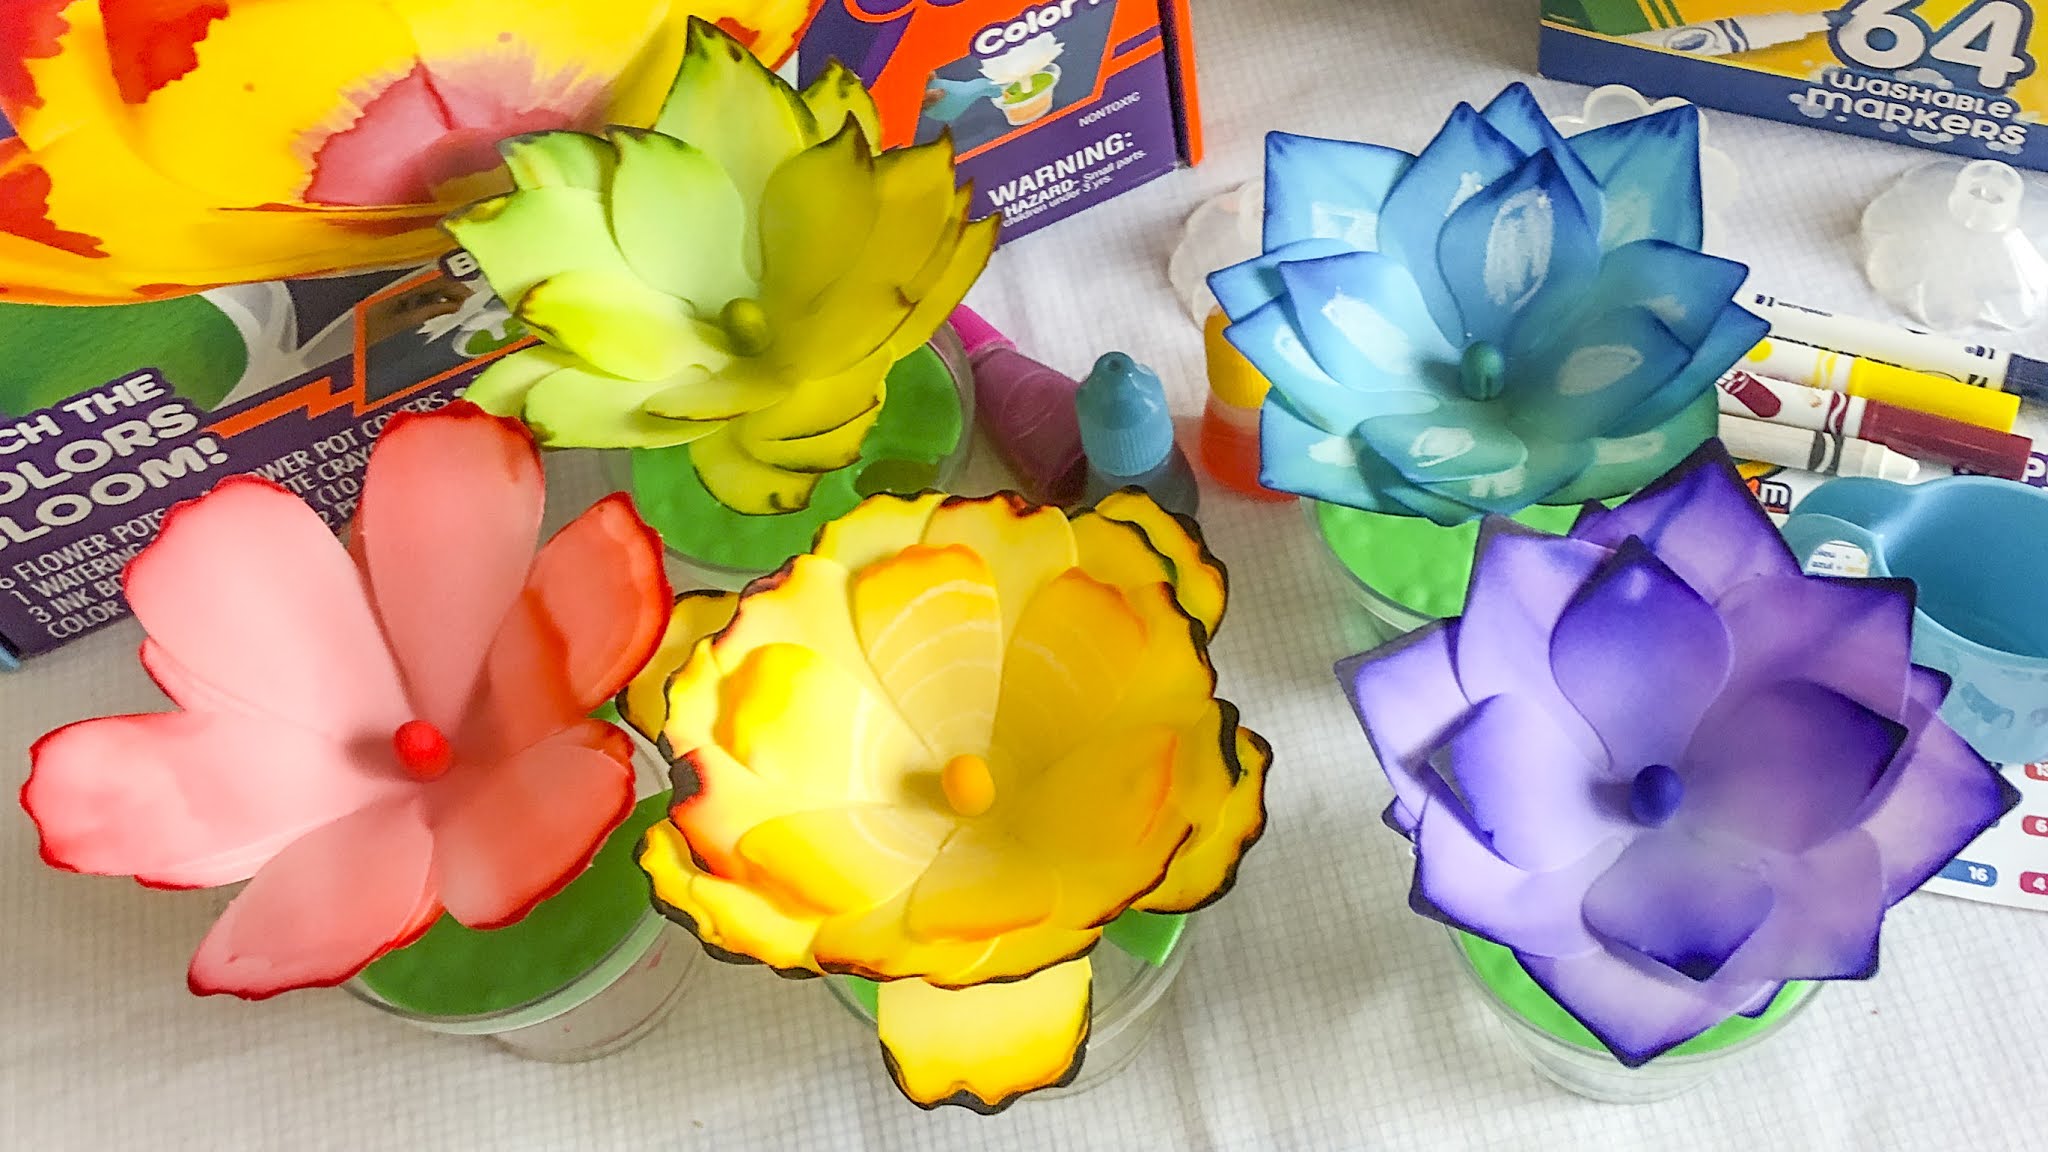 The Prettiest STEAM Activity: Crayola Paper Flower Kit